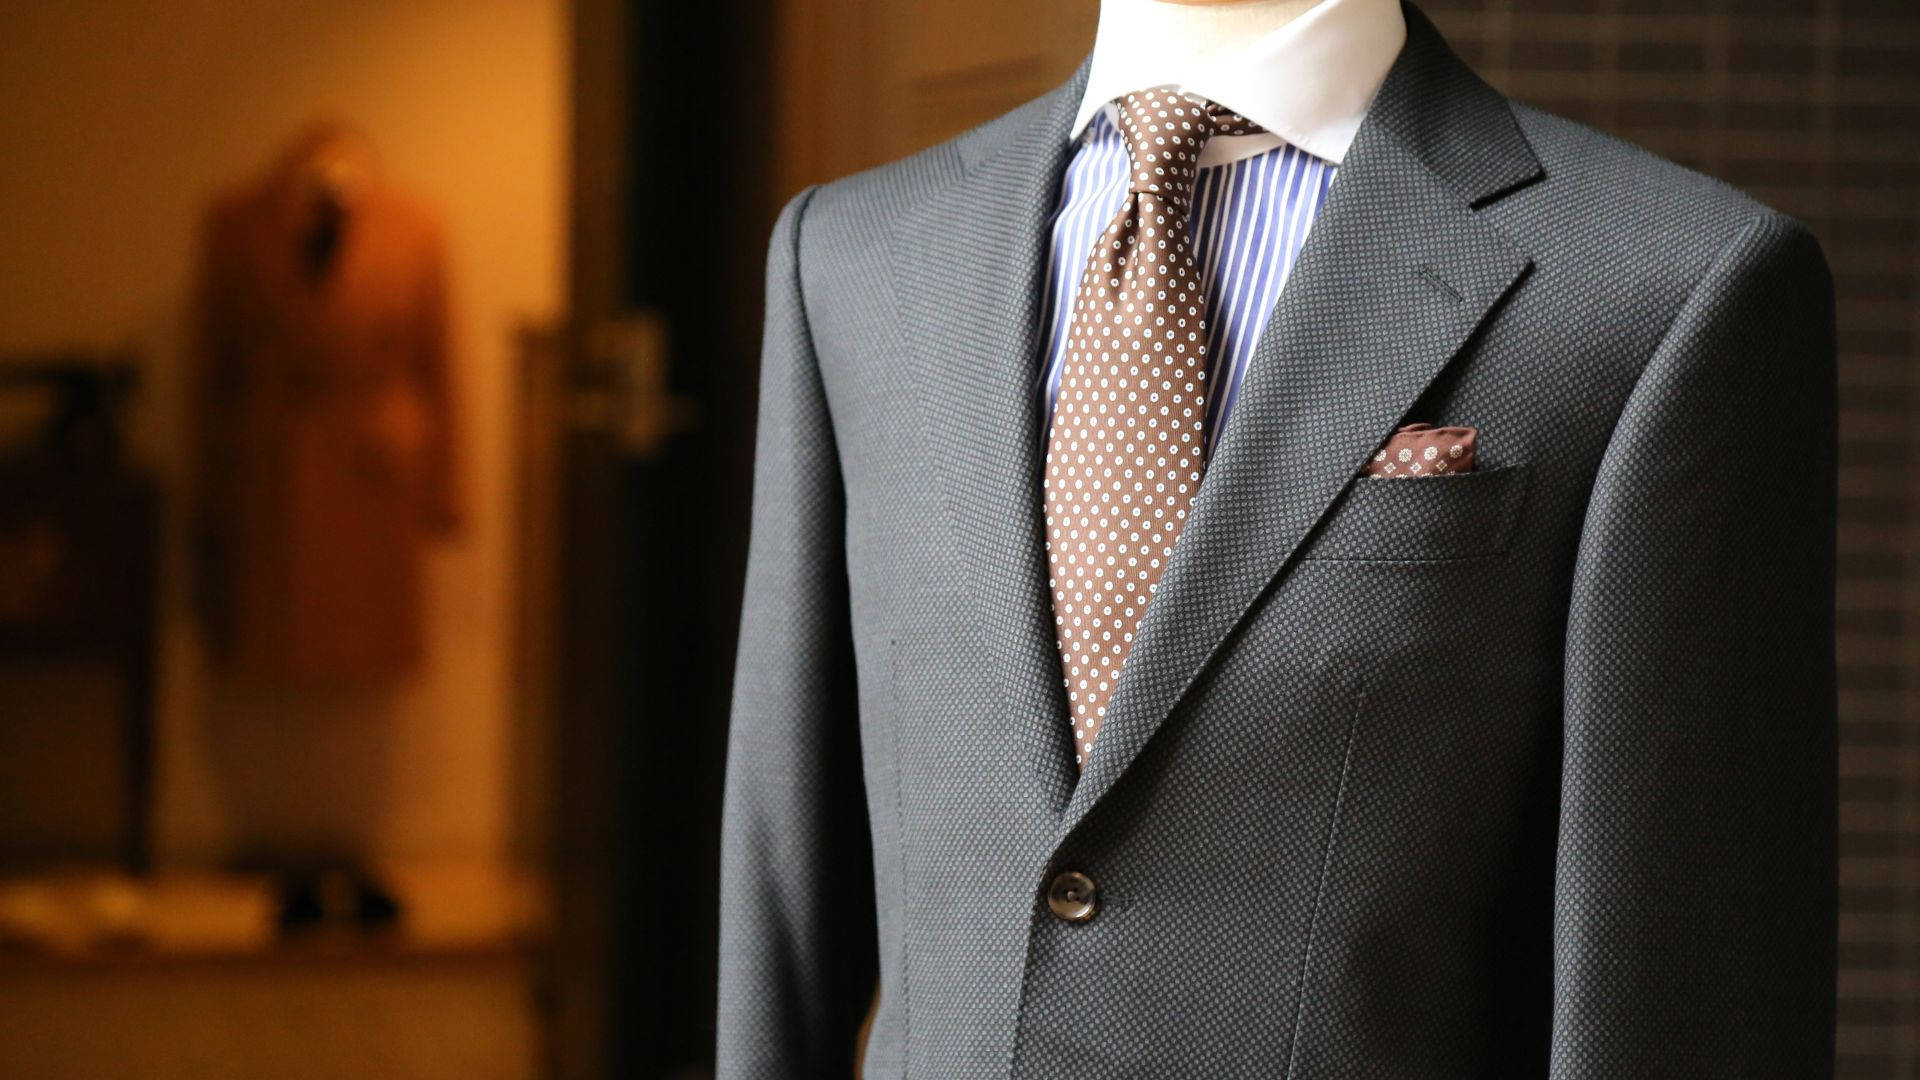 Italian Tailored Suit Wear Wallpaper